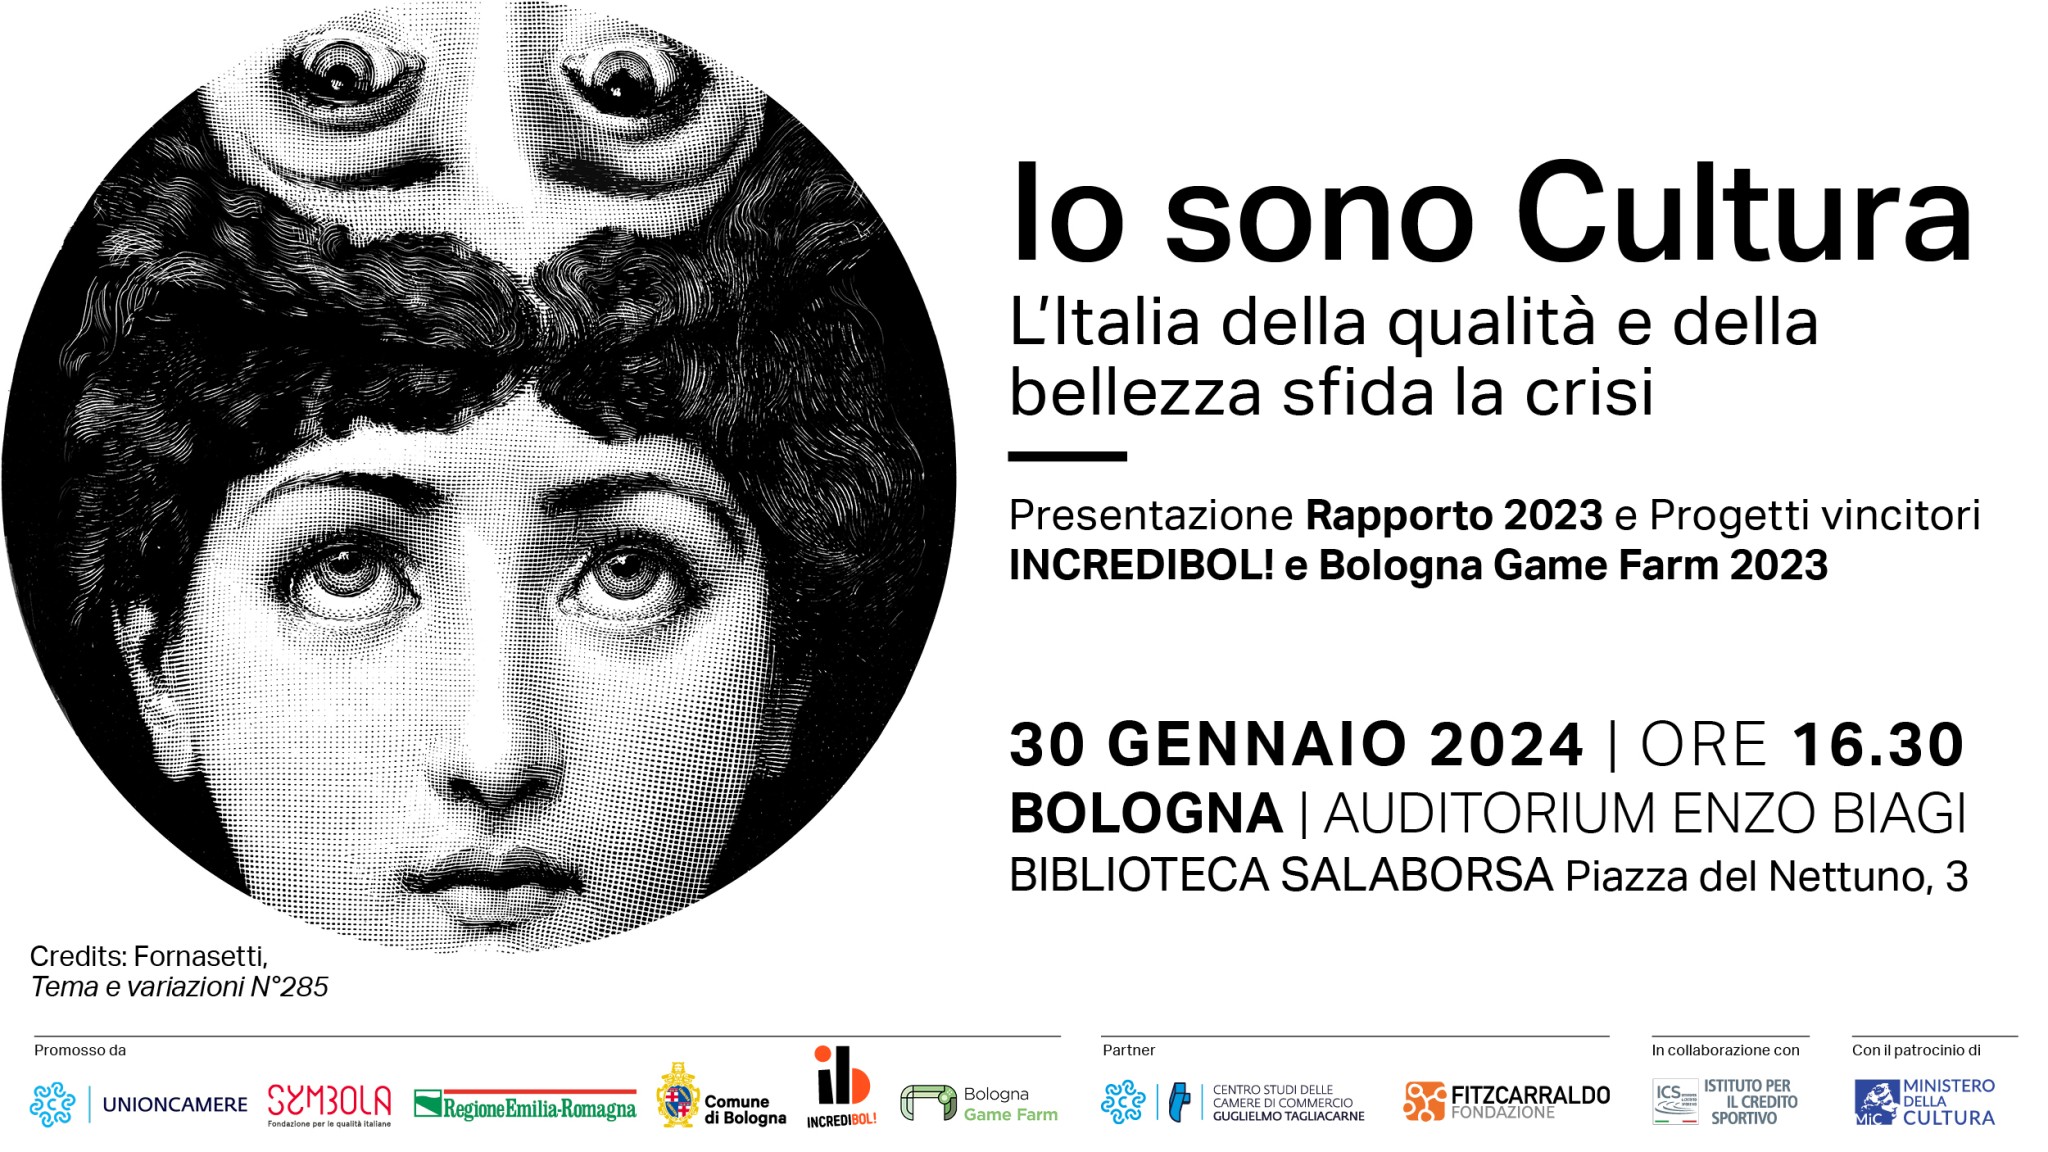 Save the date - Io sono Cultura 2023 a Bologna